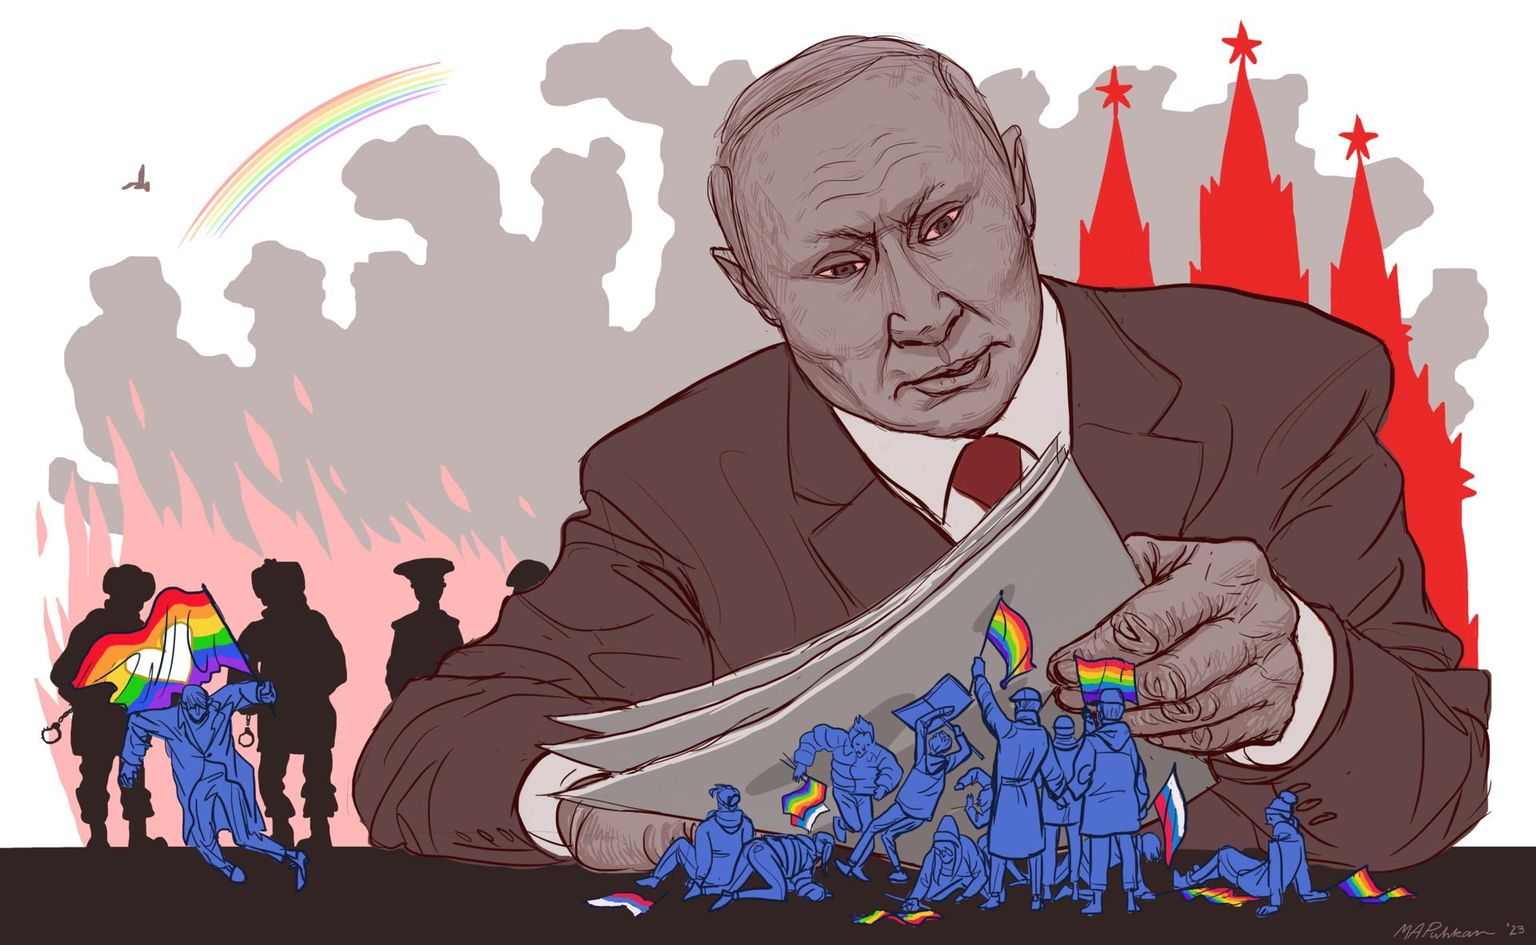 Putin kuulutab sõja samasoolisele armastusele.